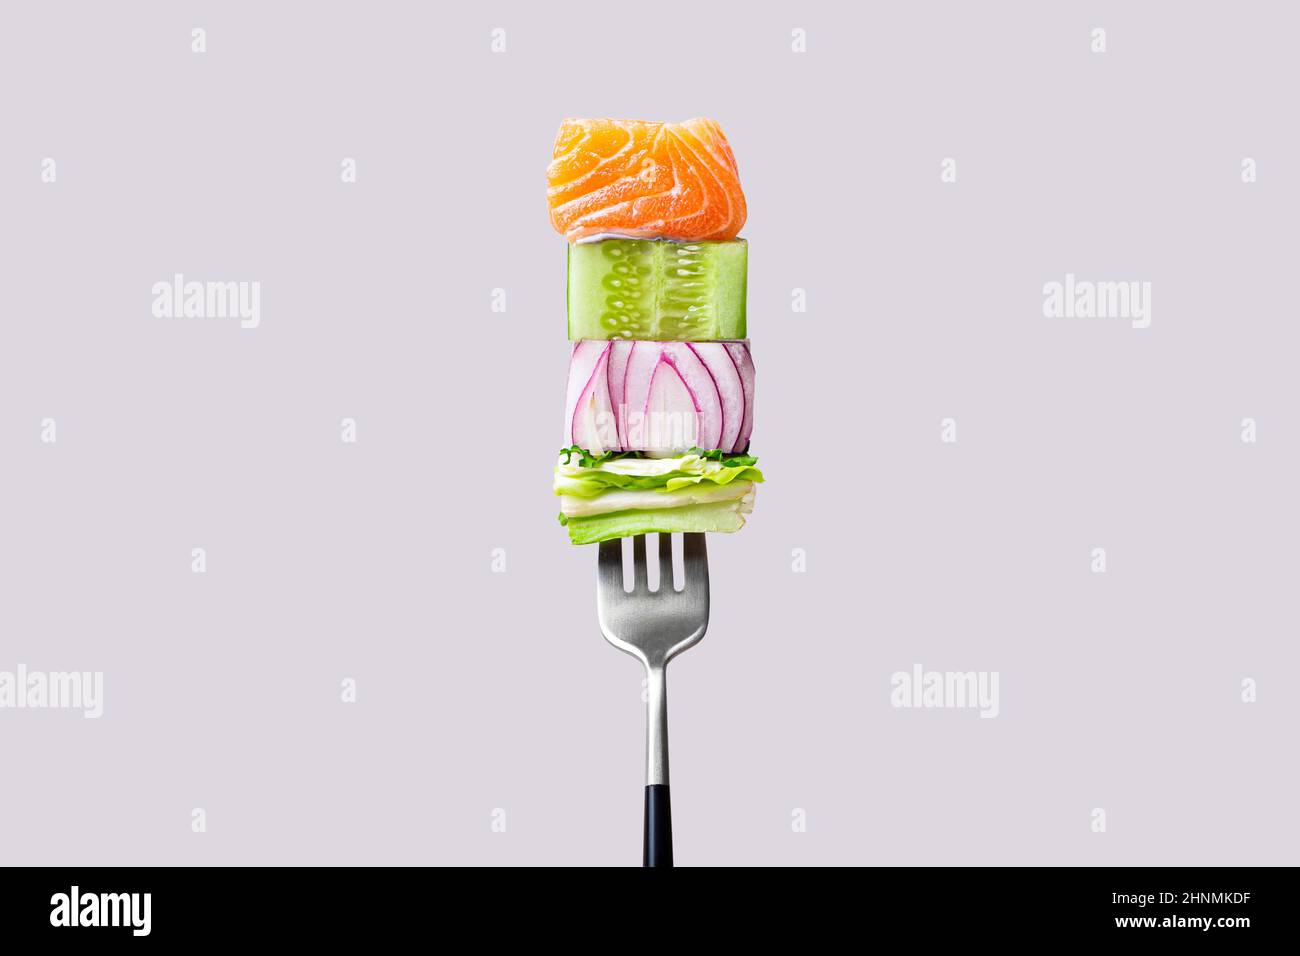 Fourchette avec nourriture sur elle: Délicieux filet de saumon, concombre, oignon, salade verte Banque D'Images